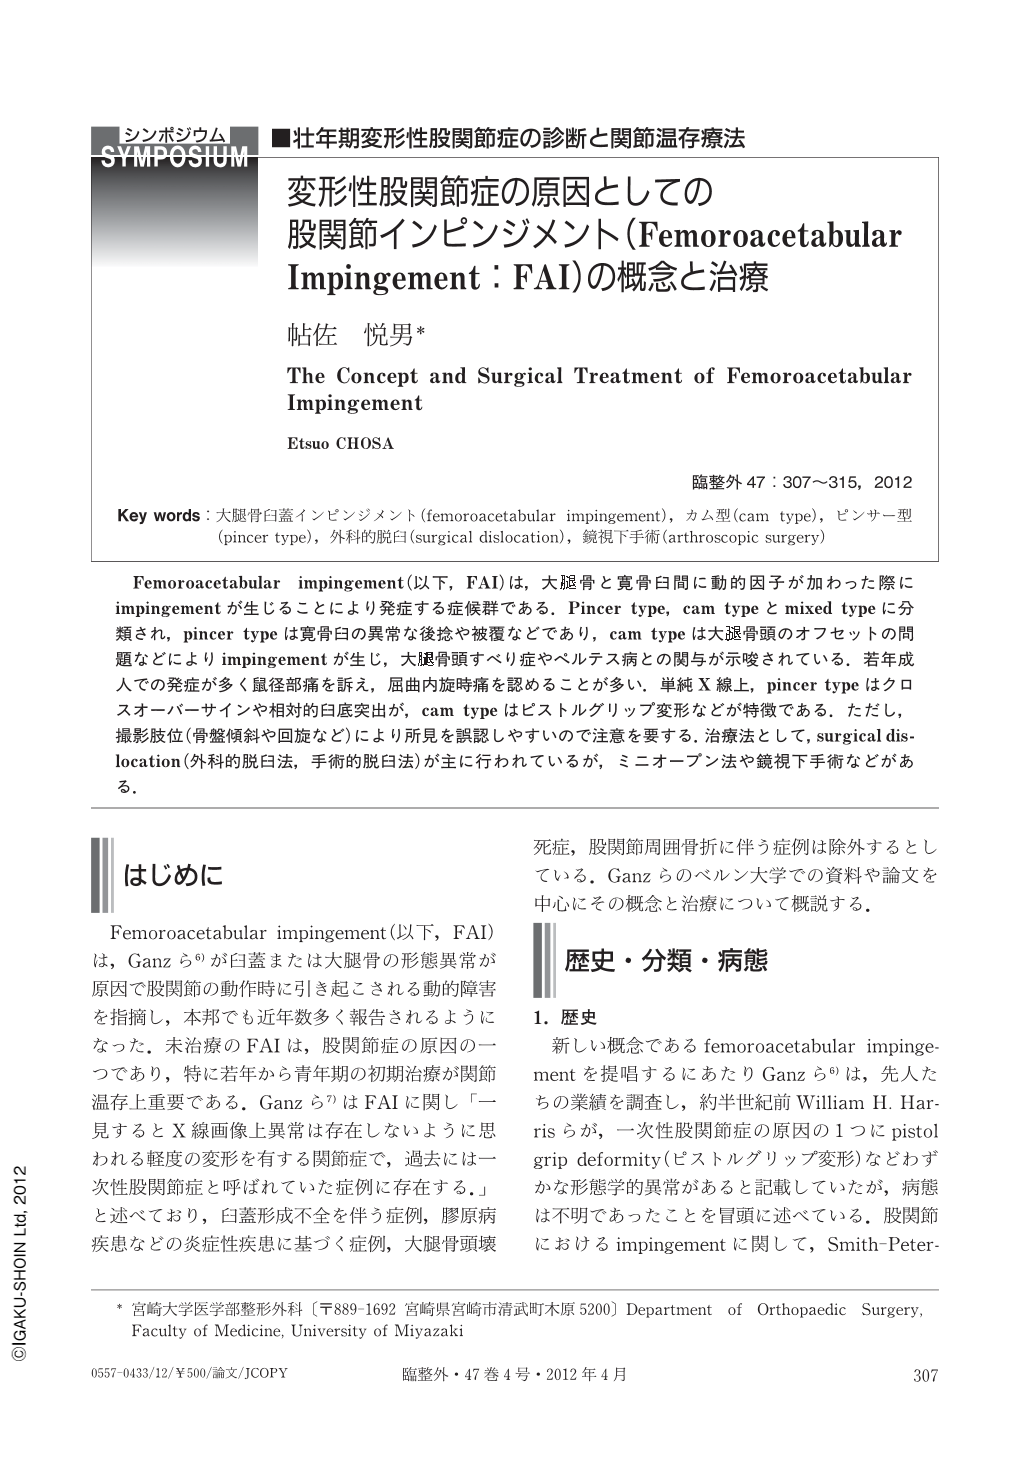 変形性股関節症の原因としての股関節インピンジメント Femoroacetabular Impingement Fai の概念と治療 臨床整形外科 47巻4号 医書 Jp